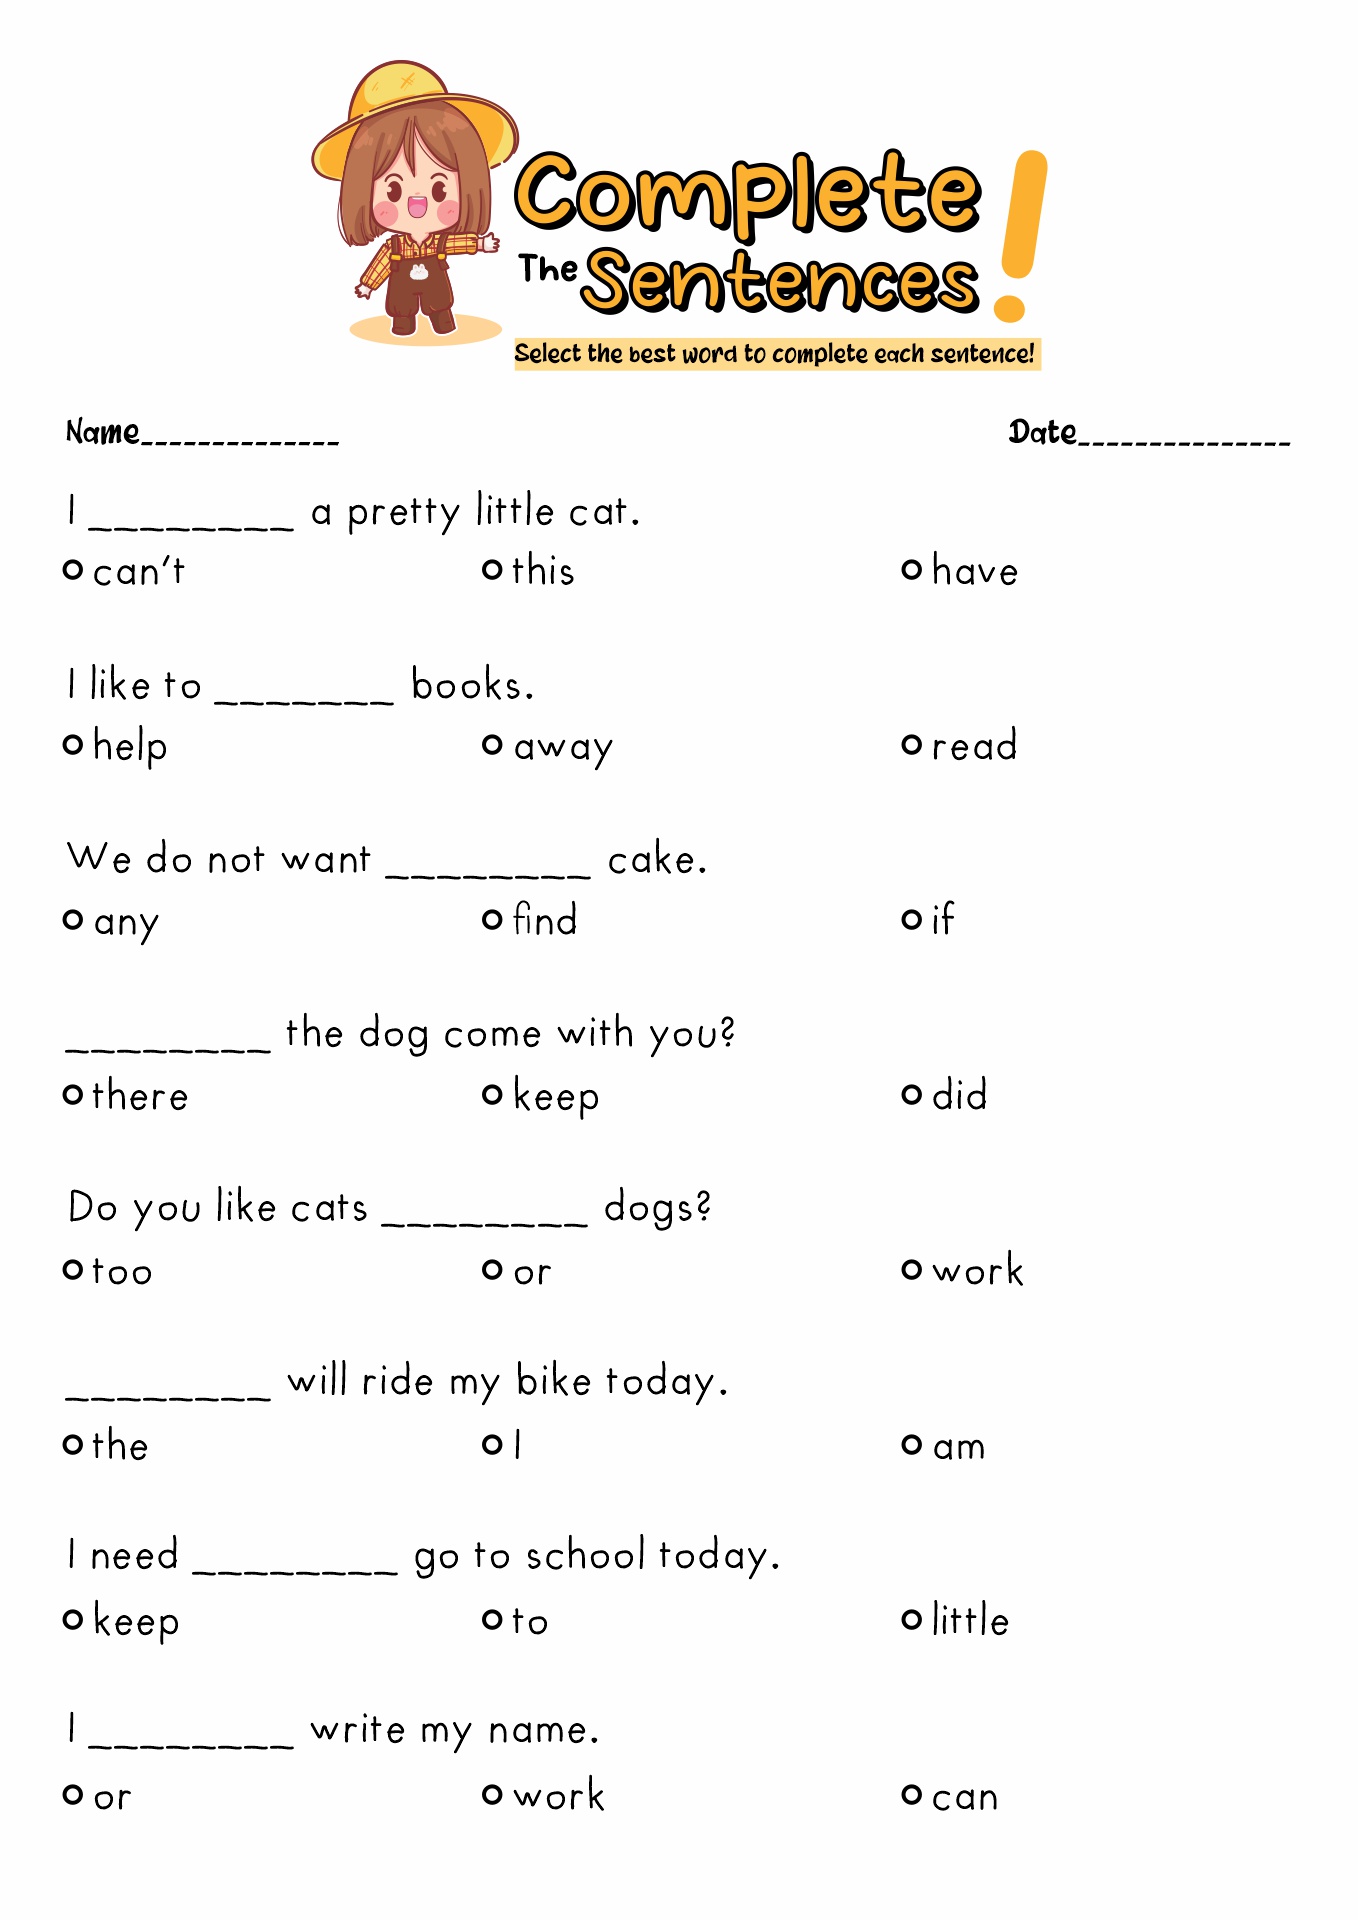 sight-word-activities-for-kindergarten-kindergarten